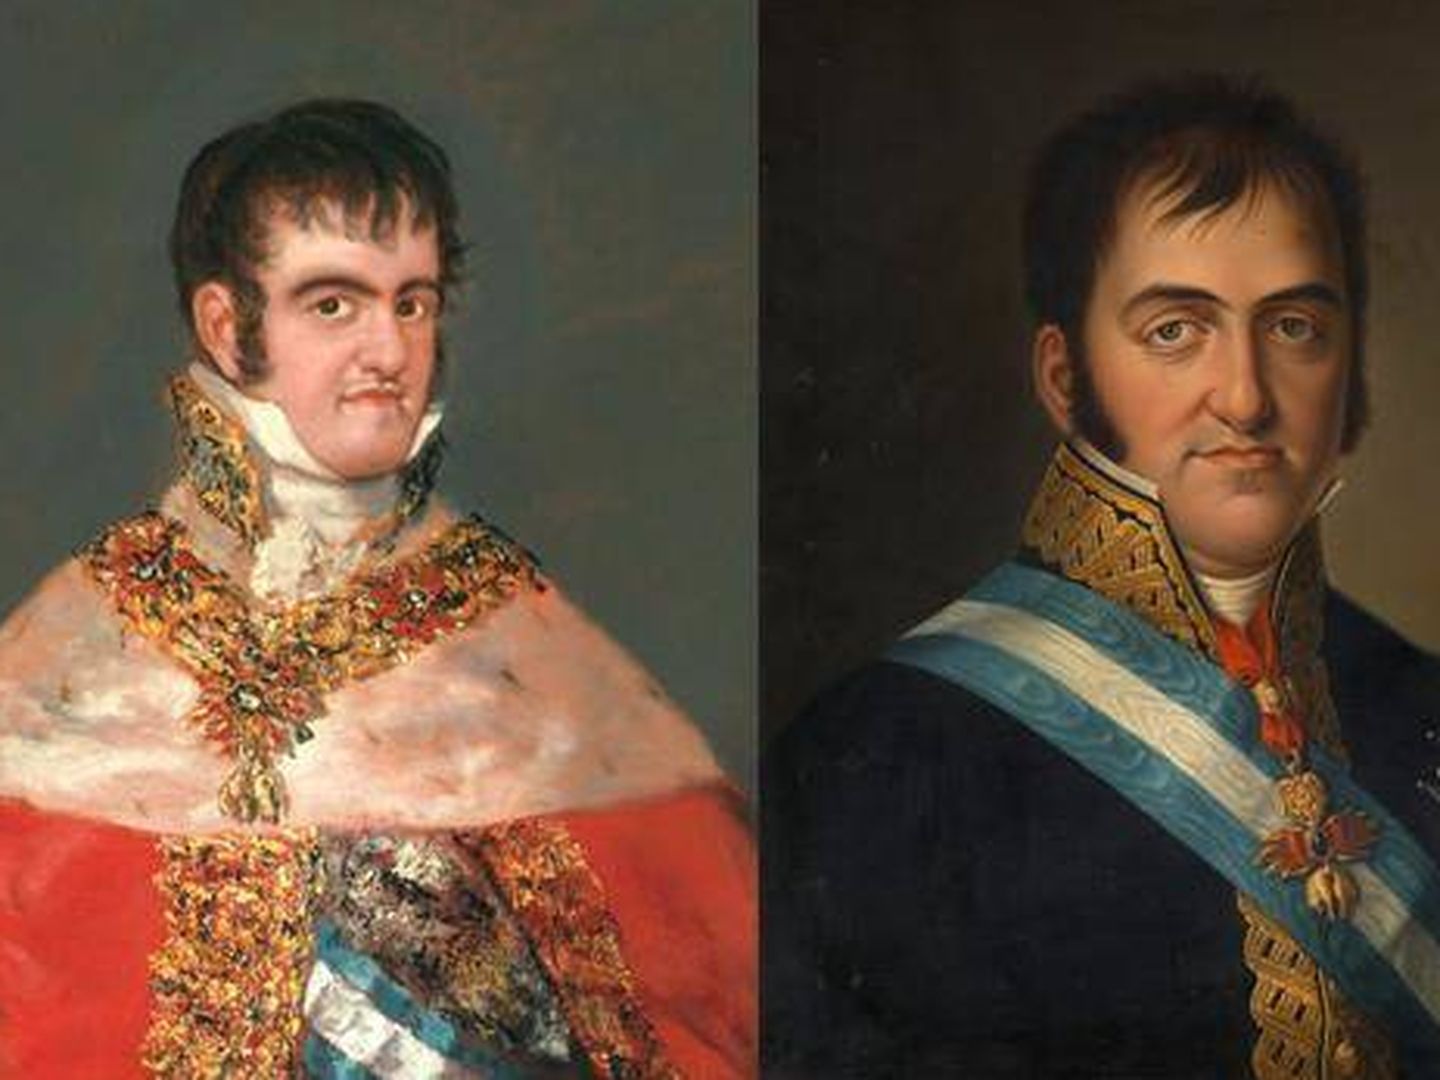 'Fernando VII con manto real' de Goya (1814-1815) y 'Fernando VII' de Luis de la Cruz y Ríos (1825).